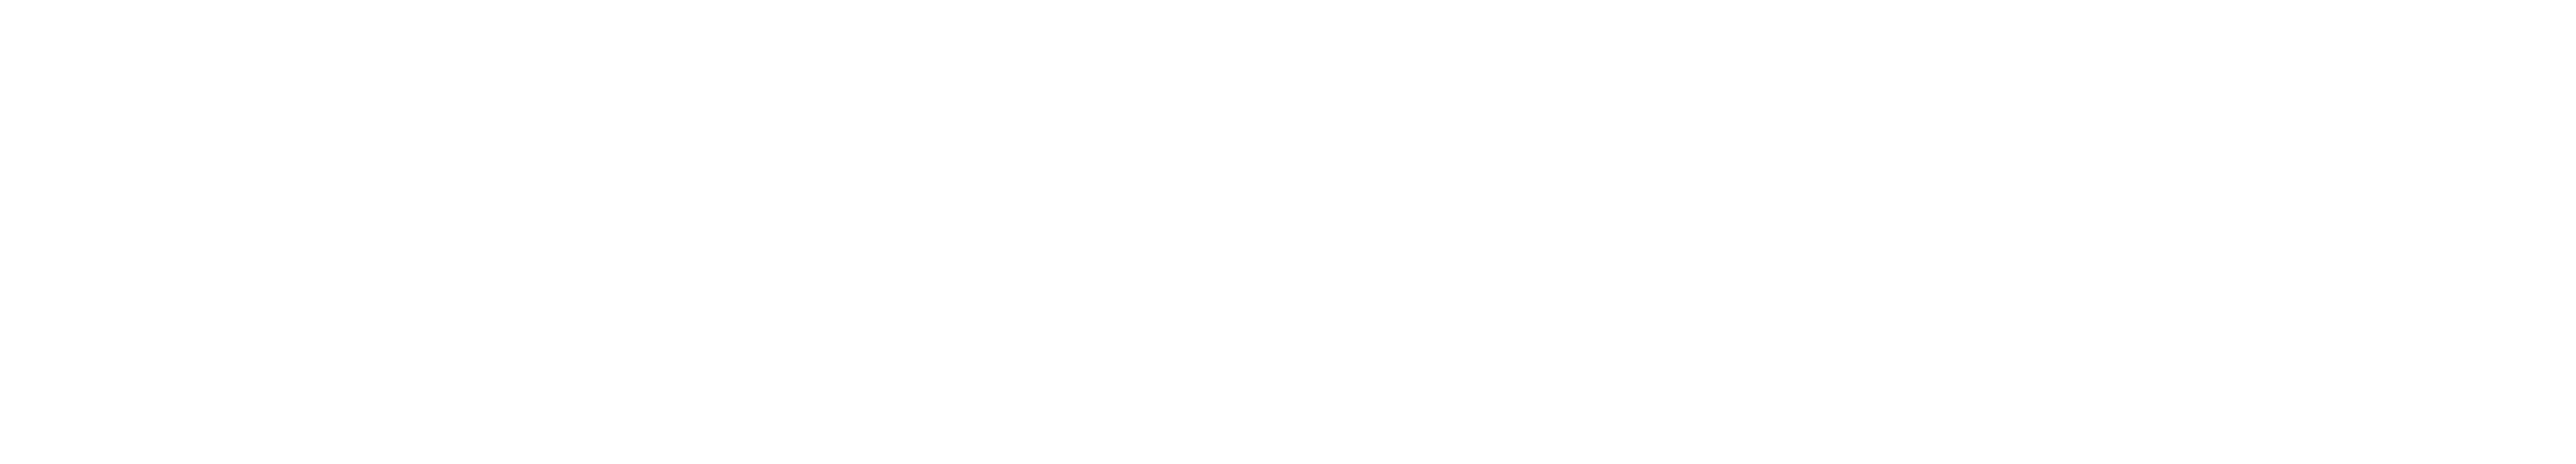 Major E-Wrestling Federation